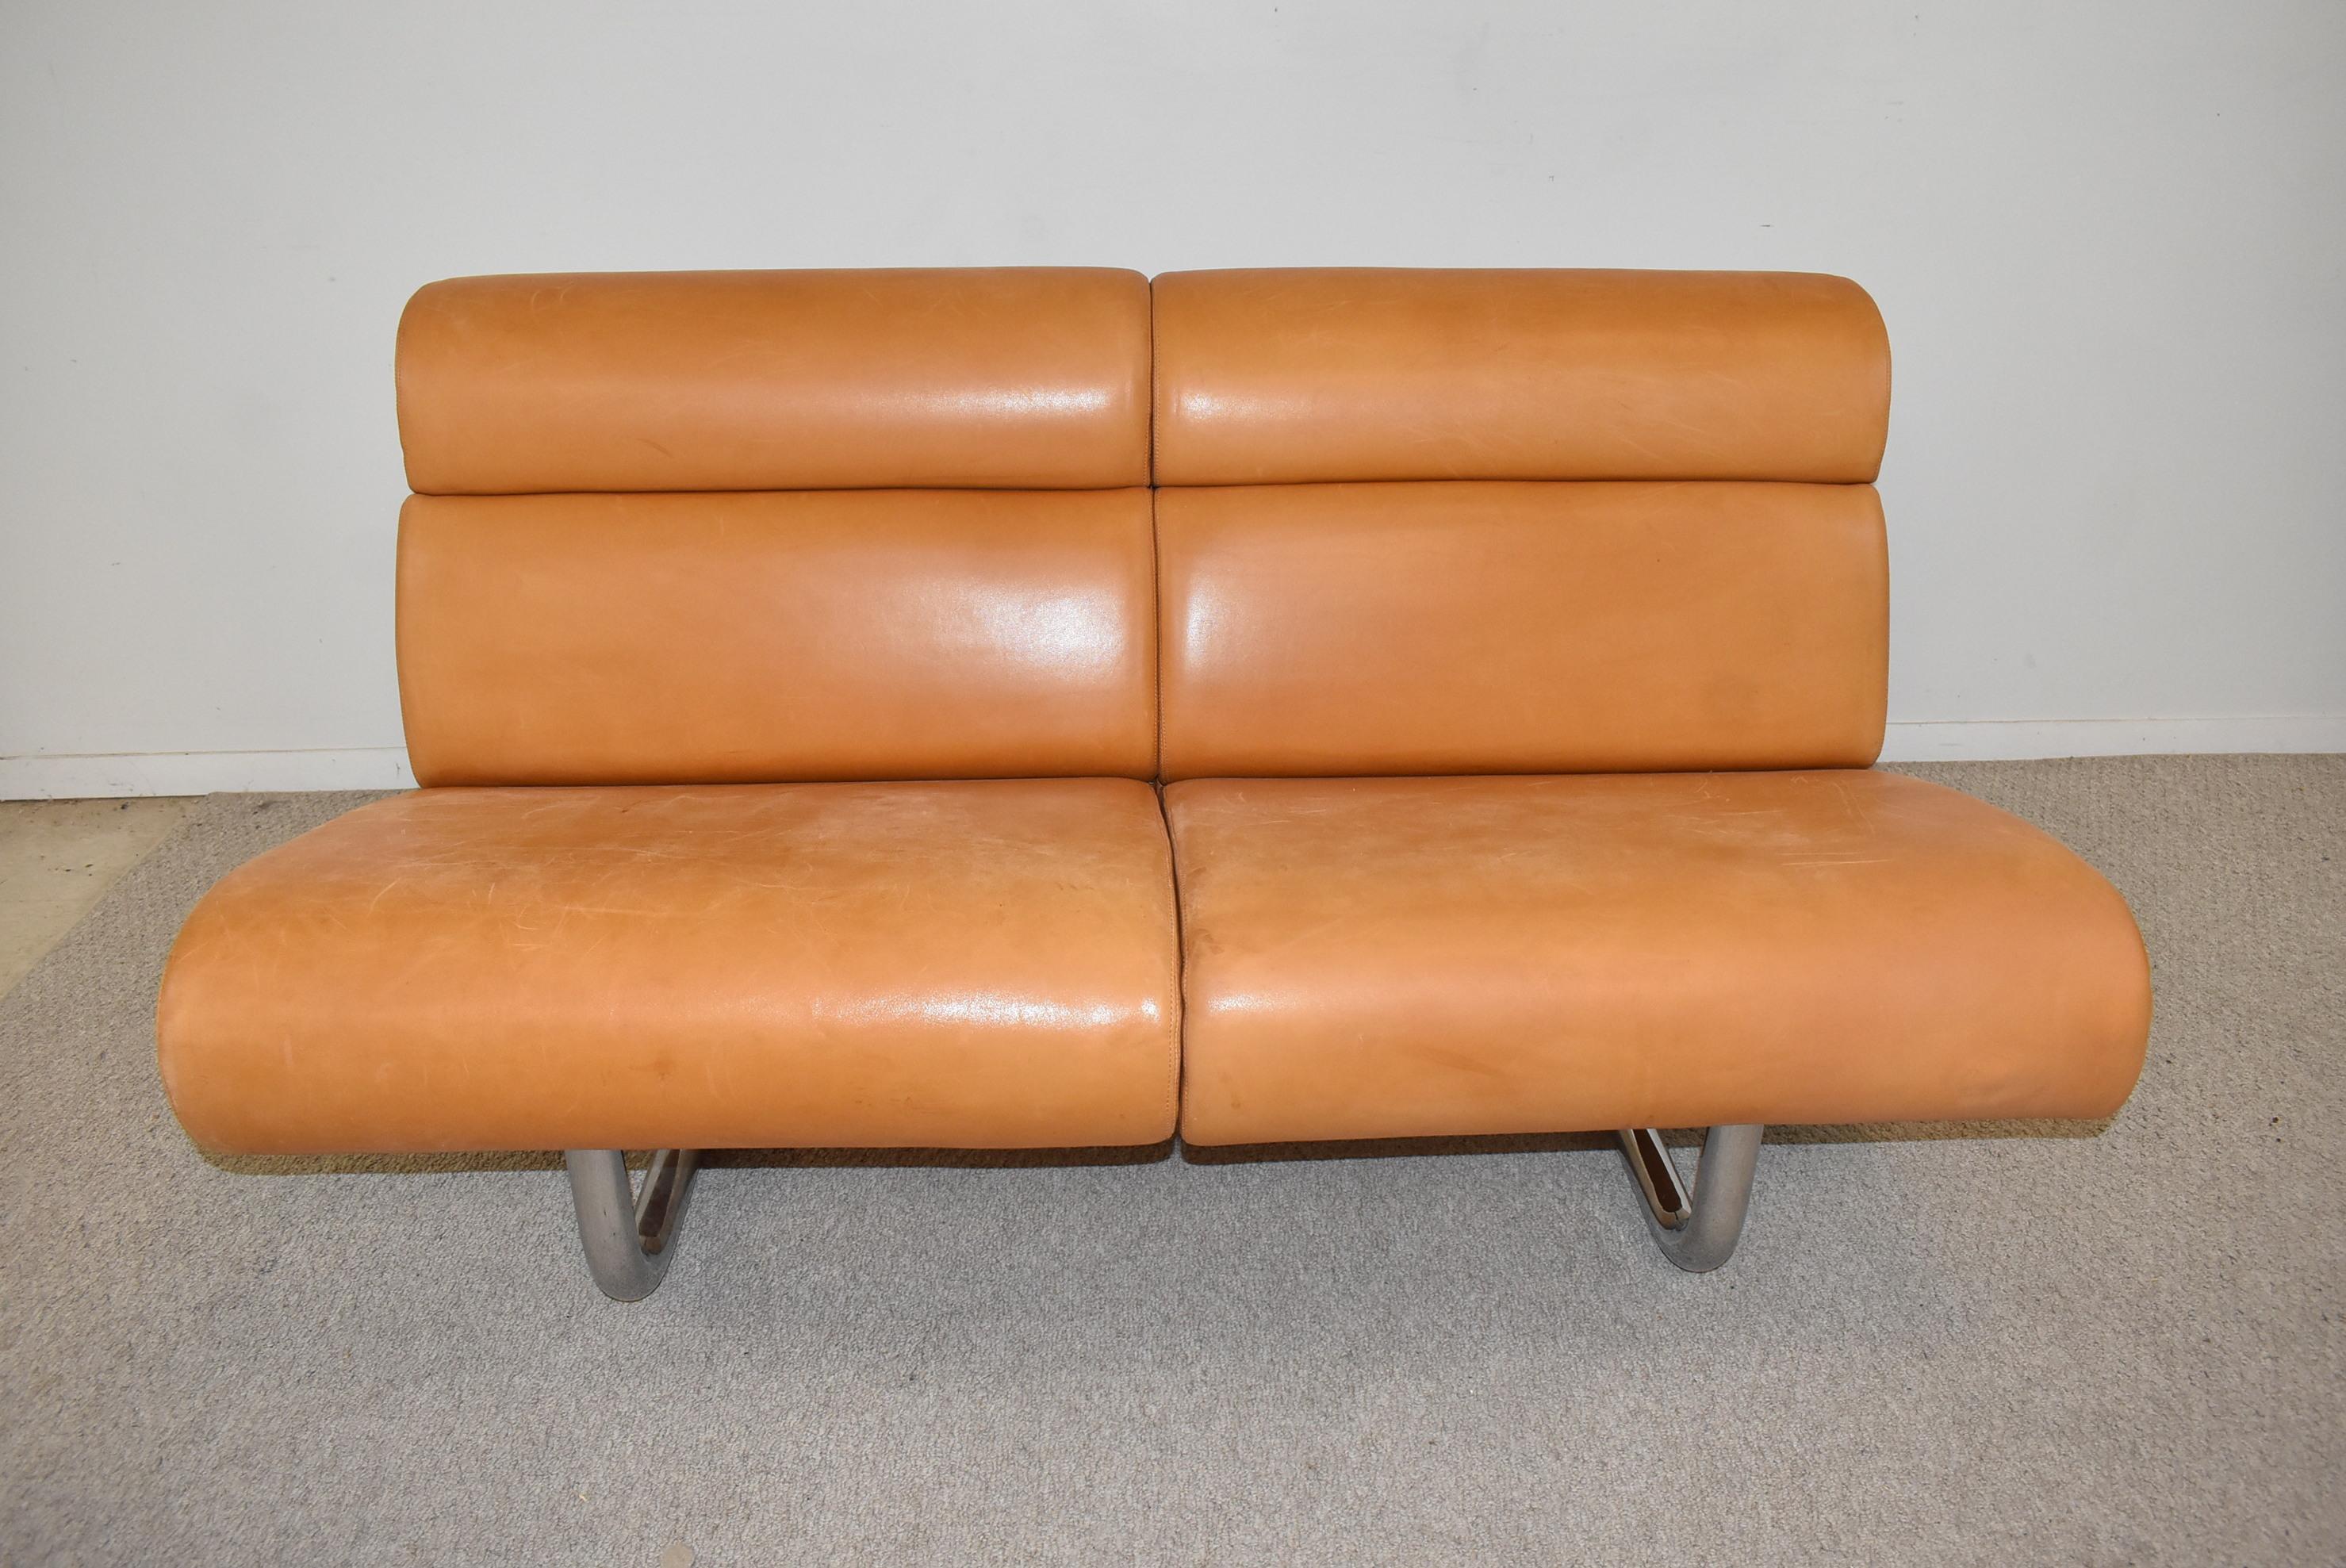 Dieses 1970 von Richard Schultz für Knoll entworfene Sofa hat eine ledergepolsterte Vorder- und Rückenlehne und besteht aus modularen Teilen, die an einem Stahlrohrrahmen hängen. An der rechten Vorderkante wurde eine kleine Lederreparatur